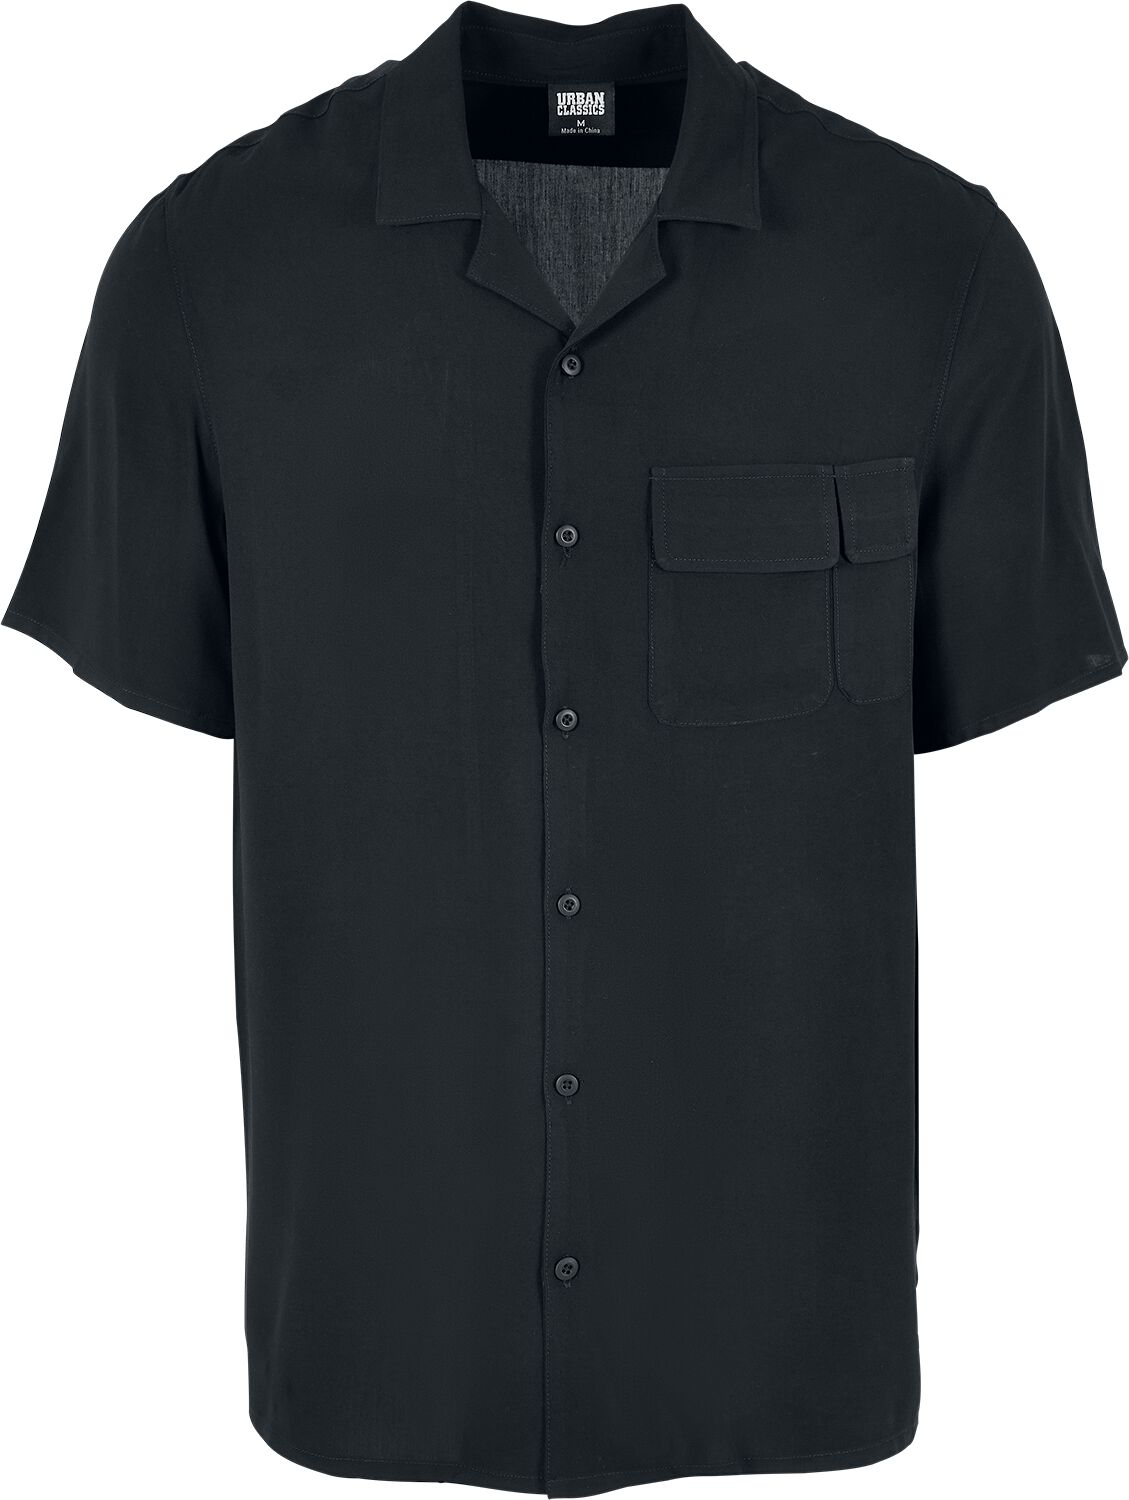 Contrast 3/4 Sleeve Raglan Tee, Urban Classics Long-sleeve Shirt